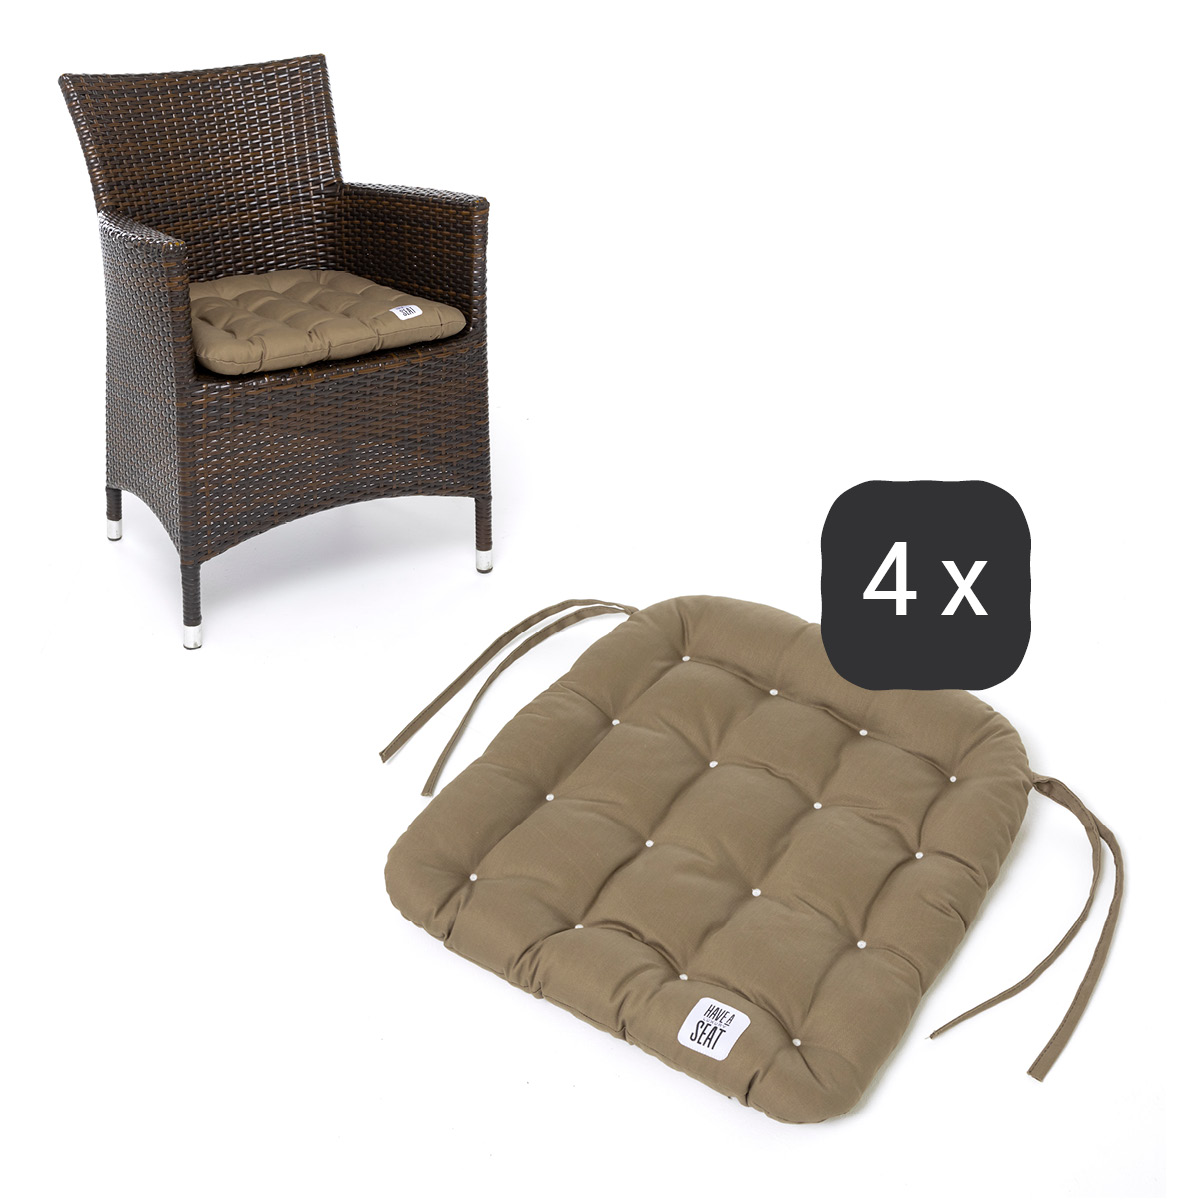 Sitzkissen für Rattanstühle 48x46 cm | Goldbraun | 4er Set | Premium-Sitzkomfort | Indoor / Outdoor | waschbar bis 95°C | HAVE A SEAT Living